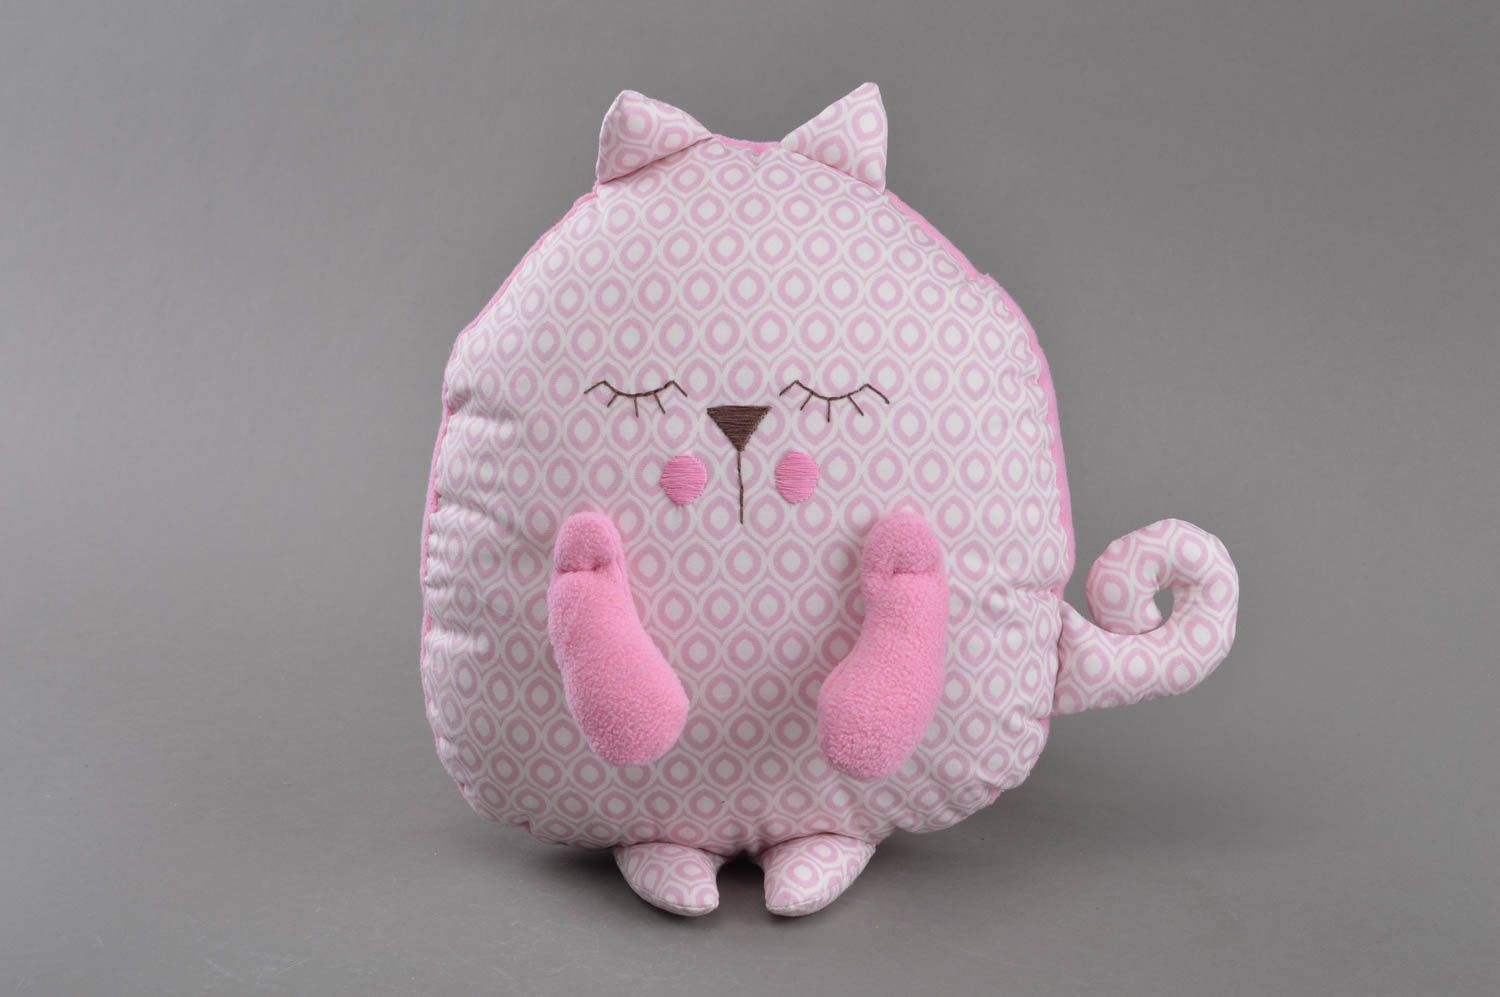 Мягкая игрушка подушка розово цвета в виде спящего кота небольшая ручной работы  фото 1